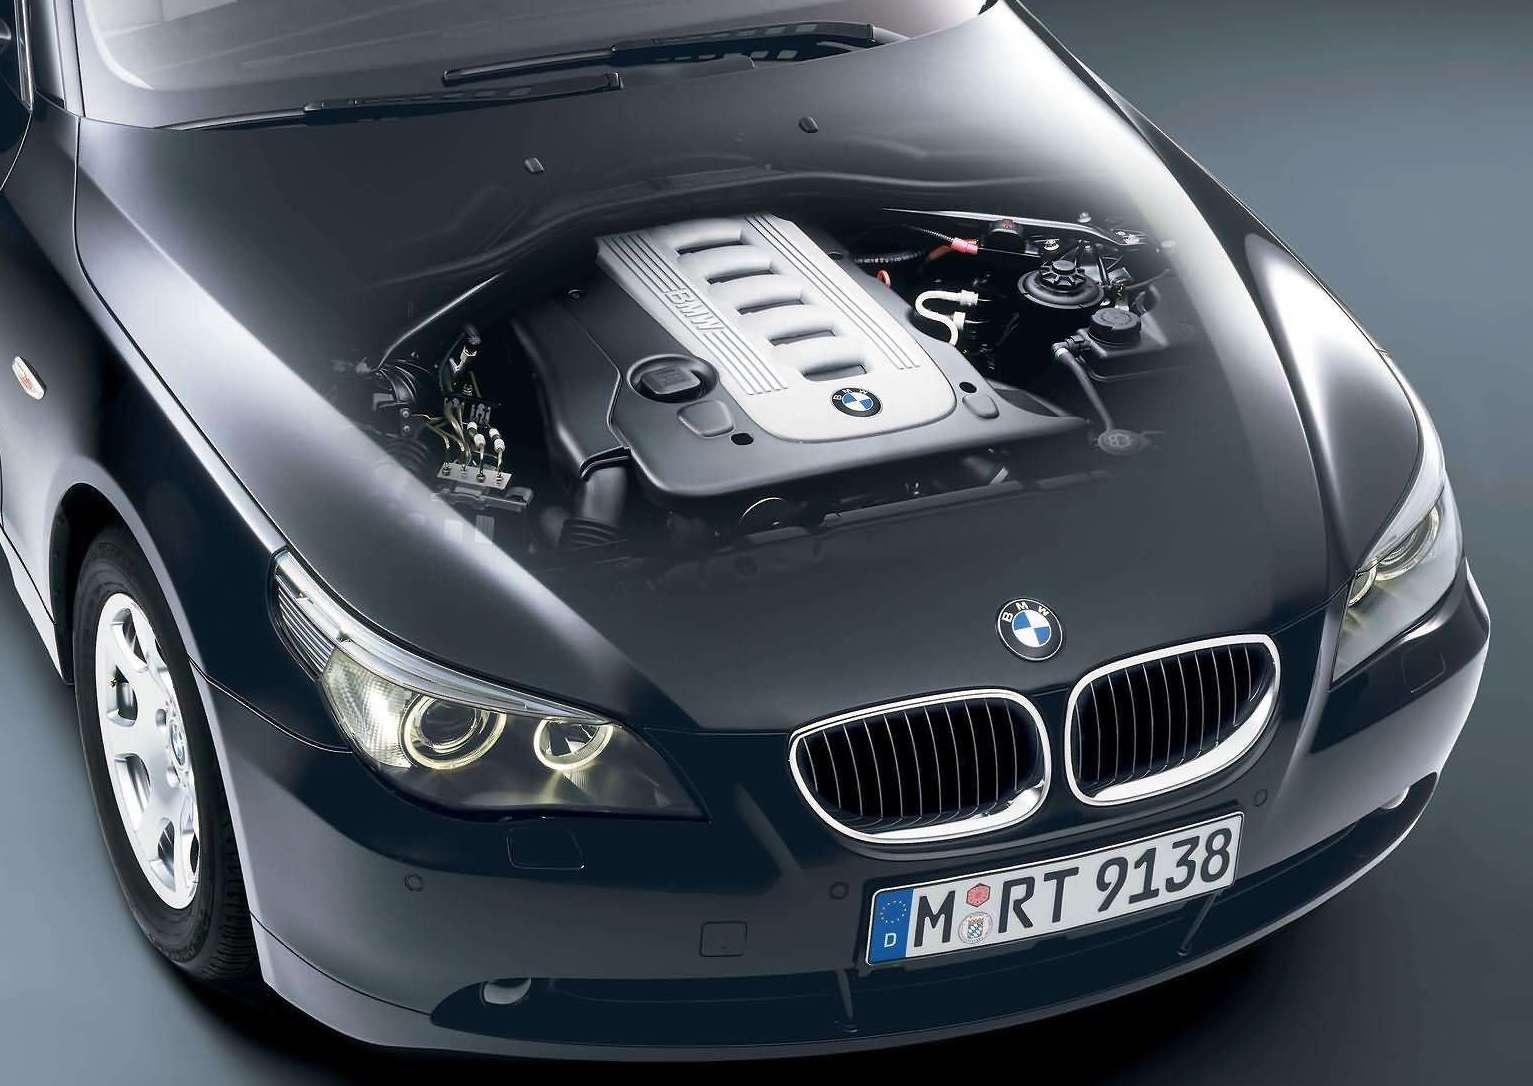 BMW E60 5 Series_2004 engine